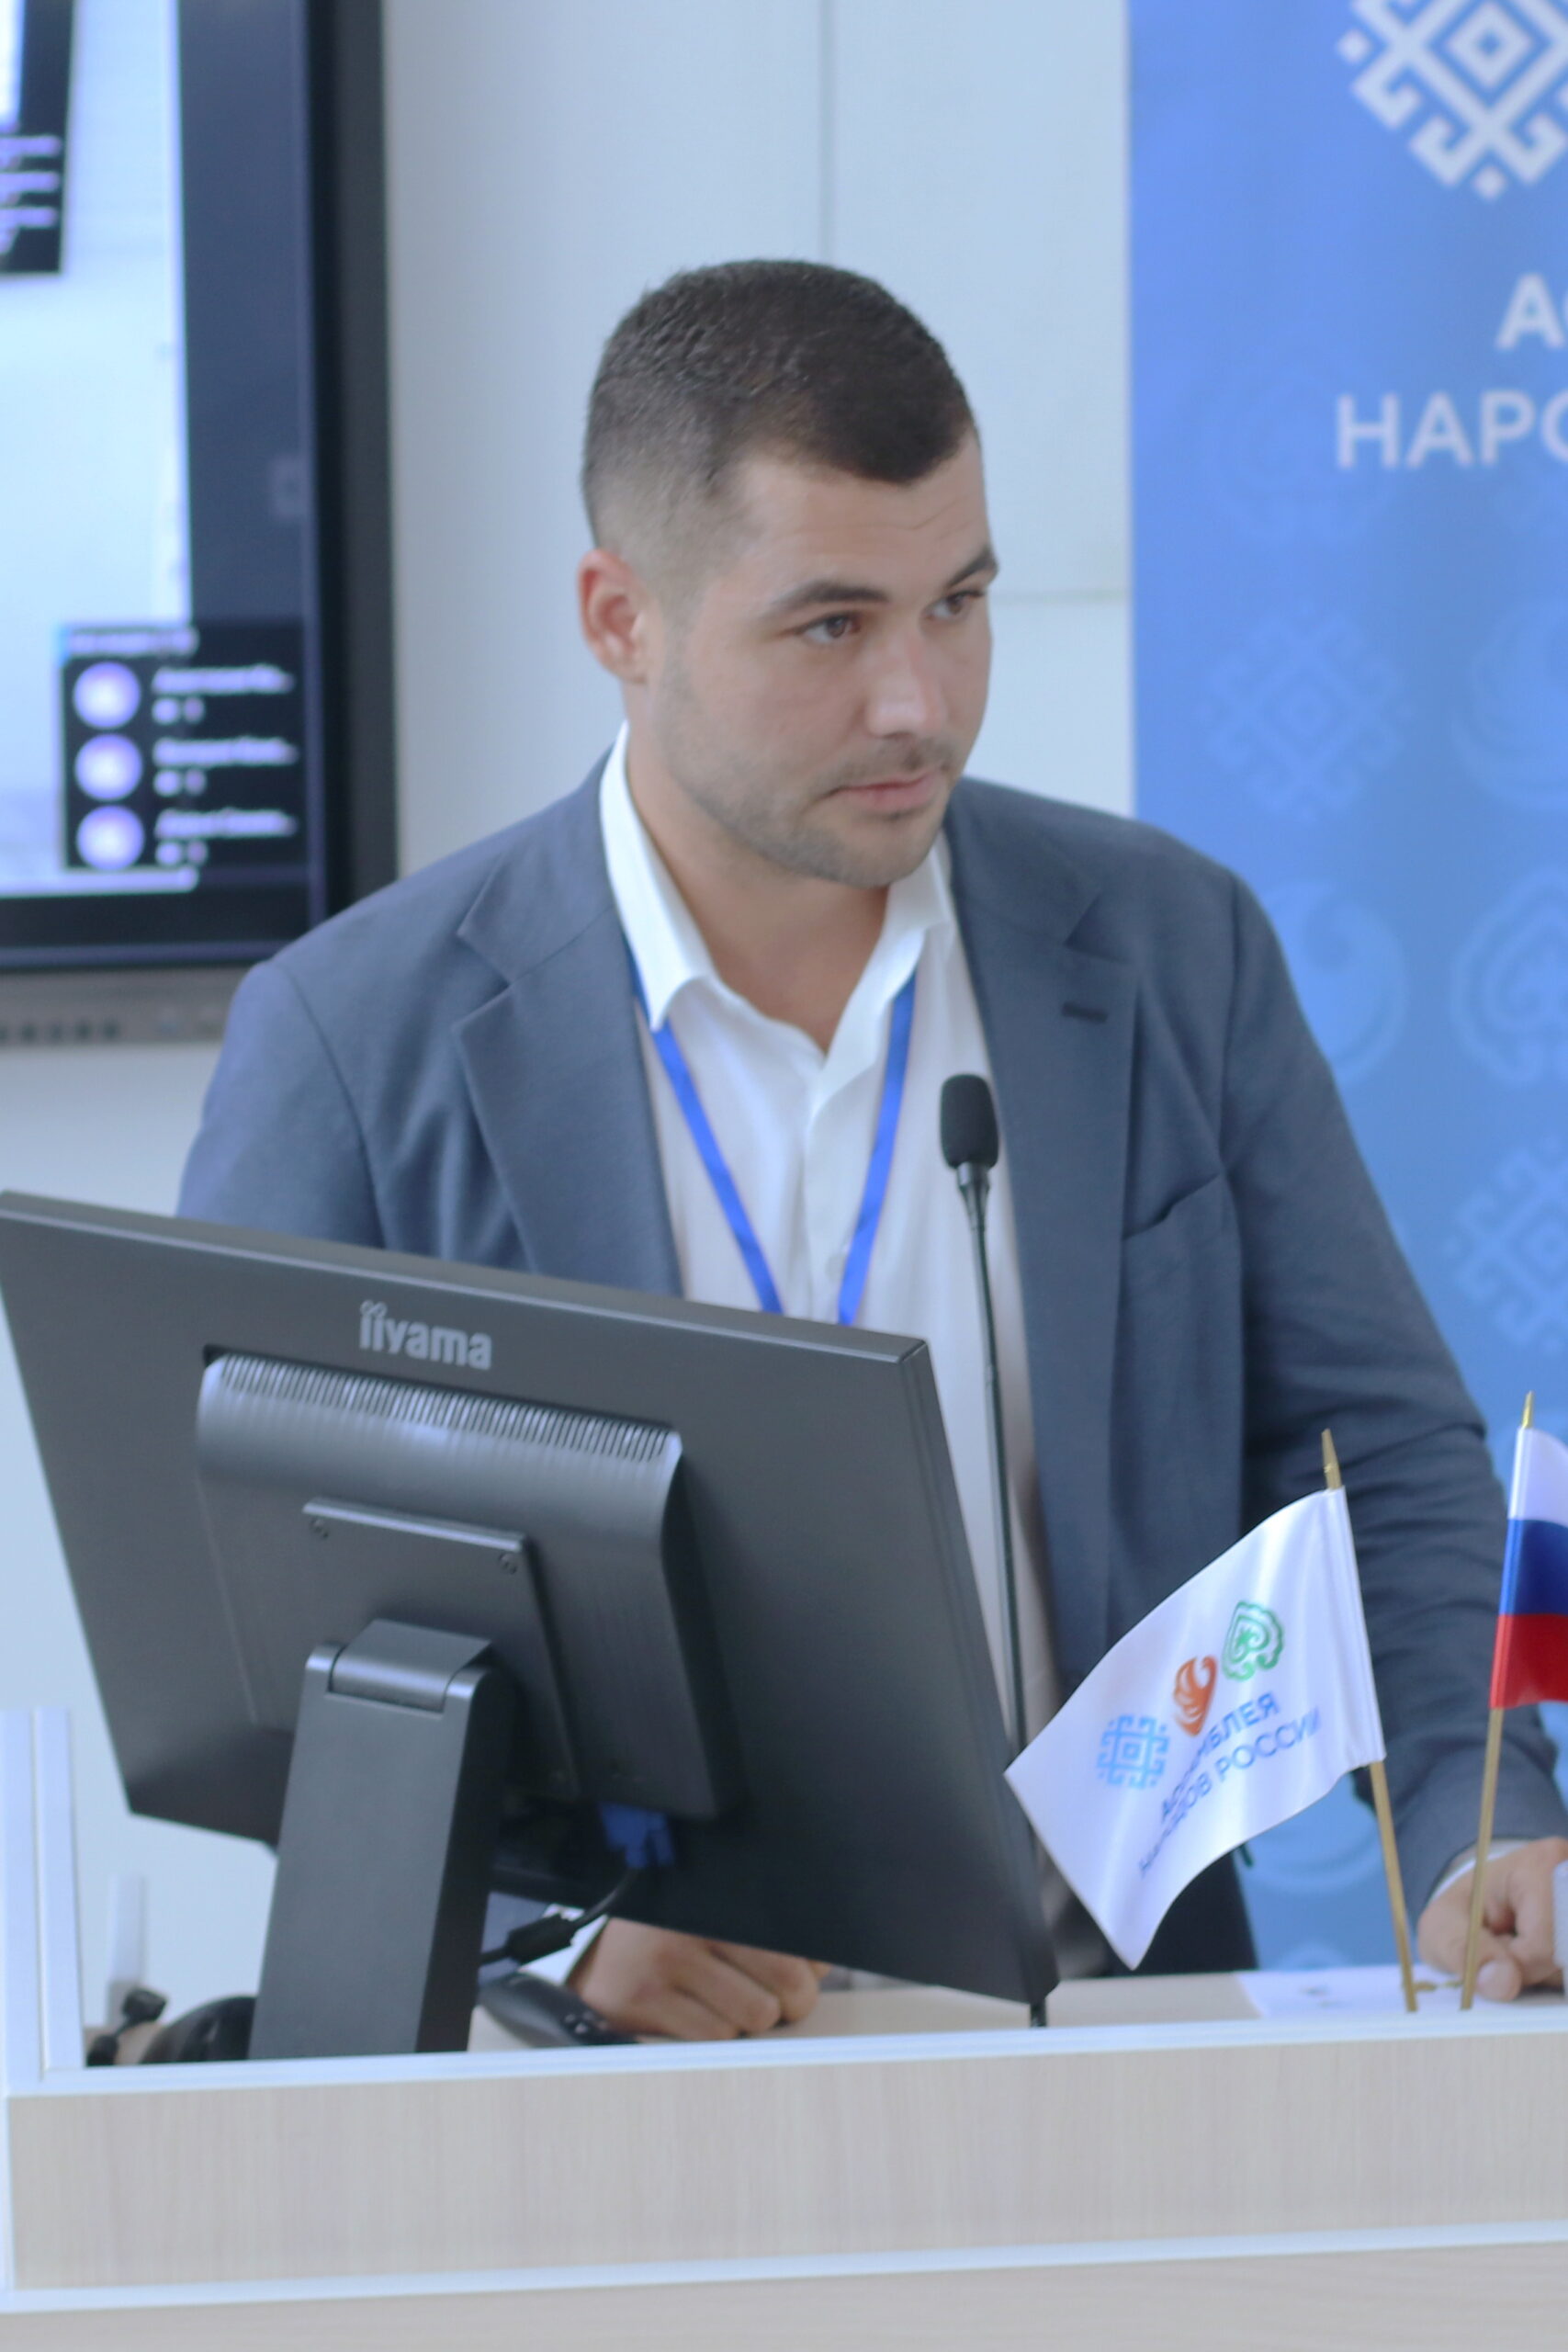 Ассамблея народов России проводит в Севастополе образовательный форум